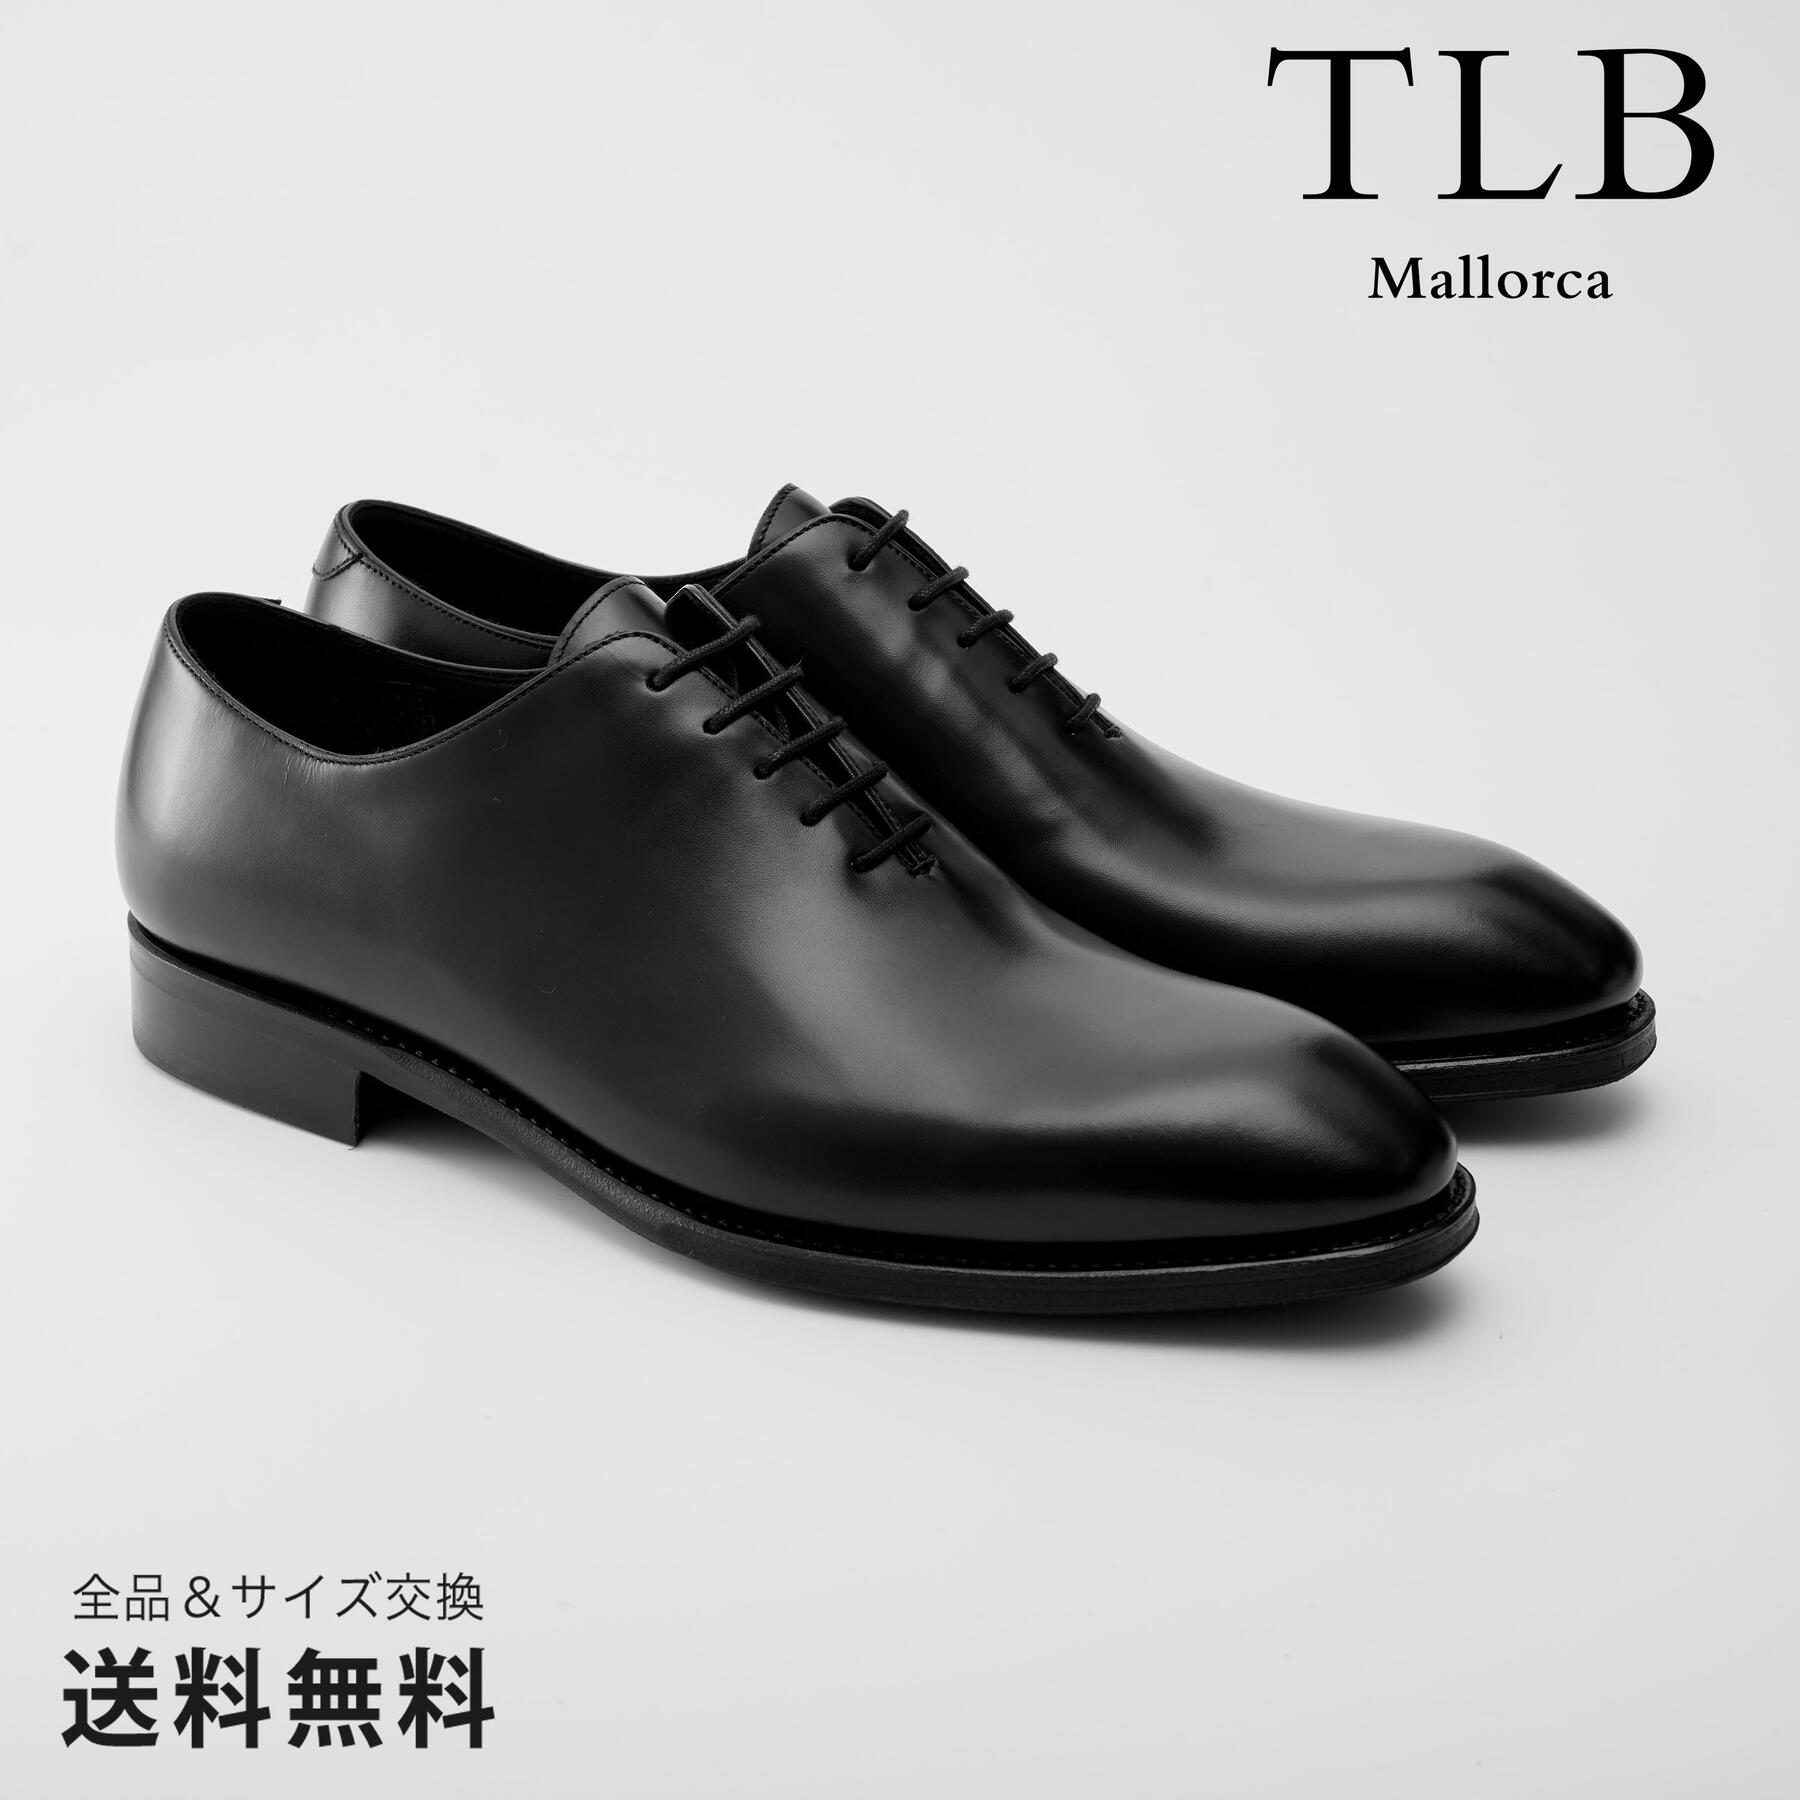 【公式】TLB Mallorca ティーエルビー レースアップ ホールカット 革靴 ボックスカーフ ブラック グットイヤーウェルト 黒 BLACK 50104 スペイン 靴 メンズ靴 ビジネスシューズ サイズ 23.5 - 27.0cm【あす楽】